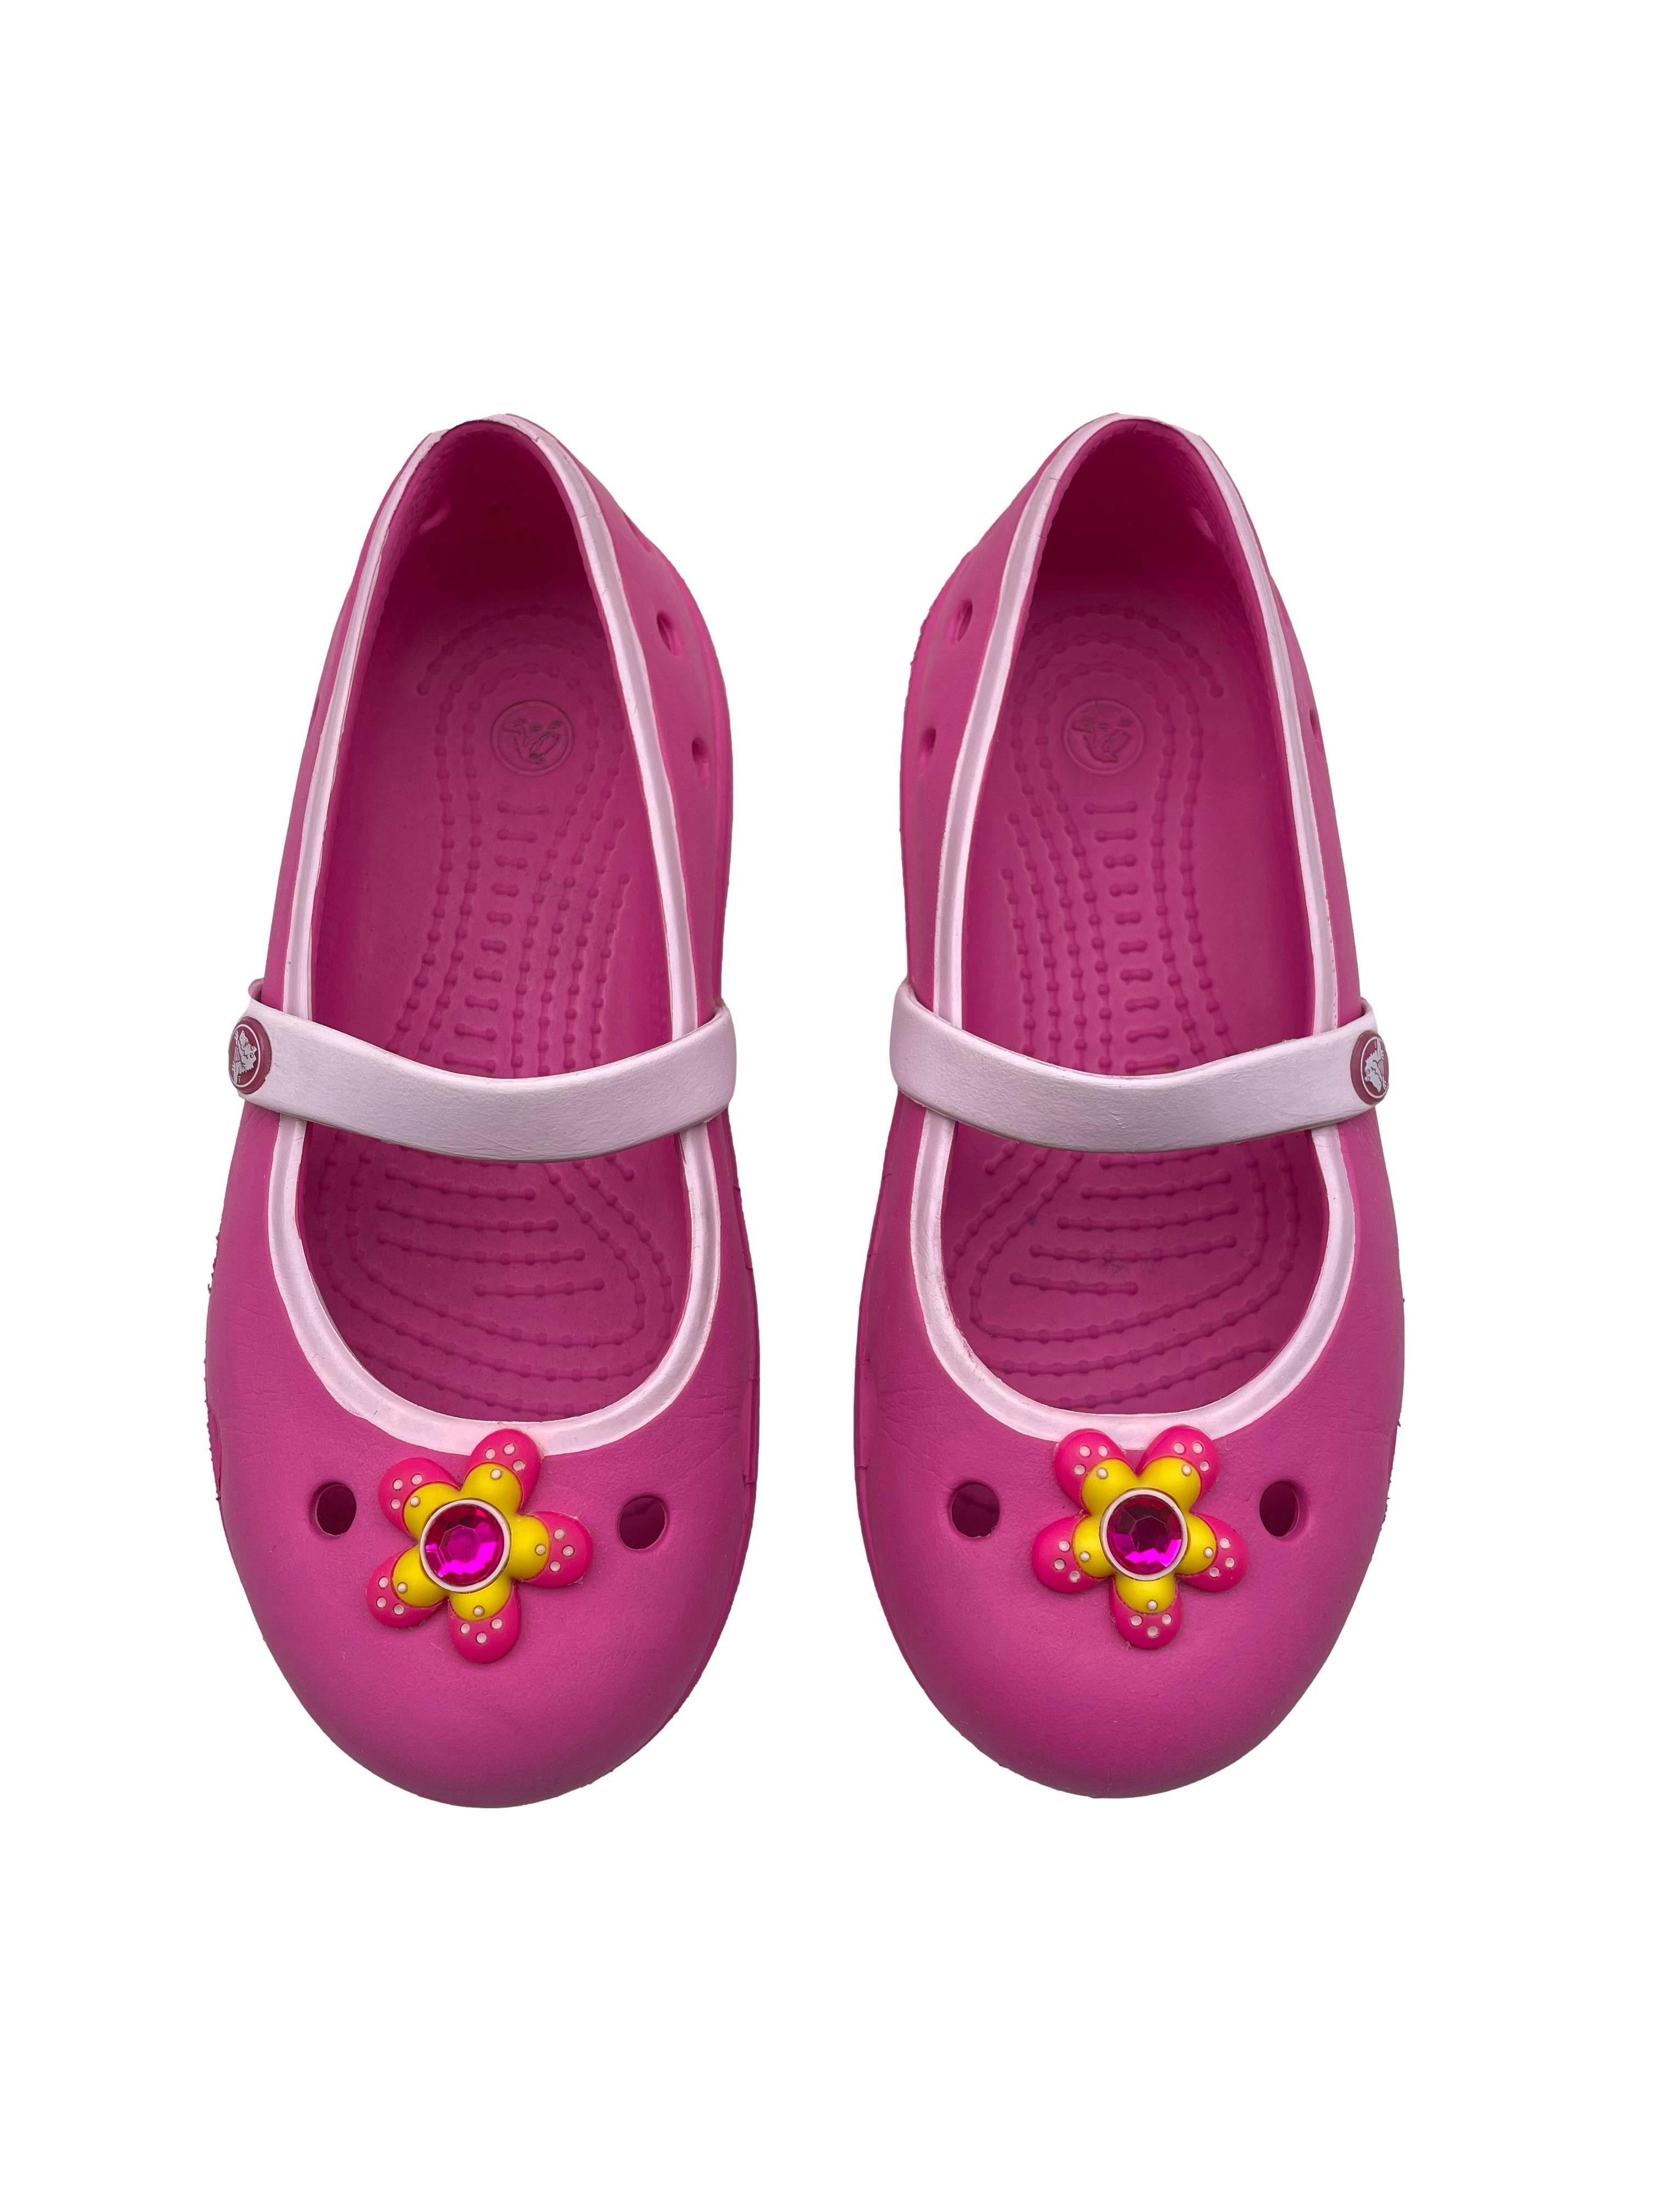 Sandalias Crocs rosadas con flor y tira en empeine. Largo pie 18.5cm. Talla C12